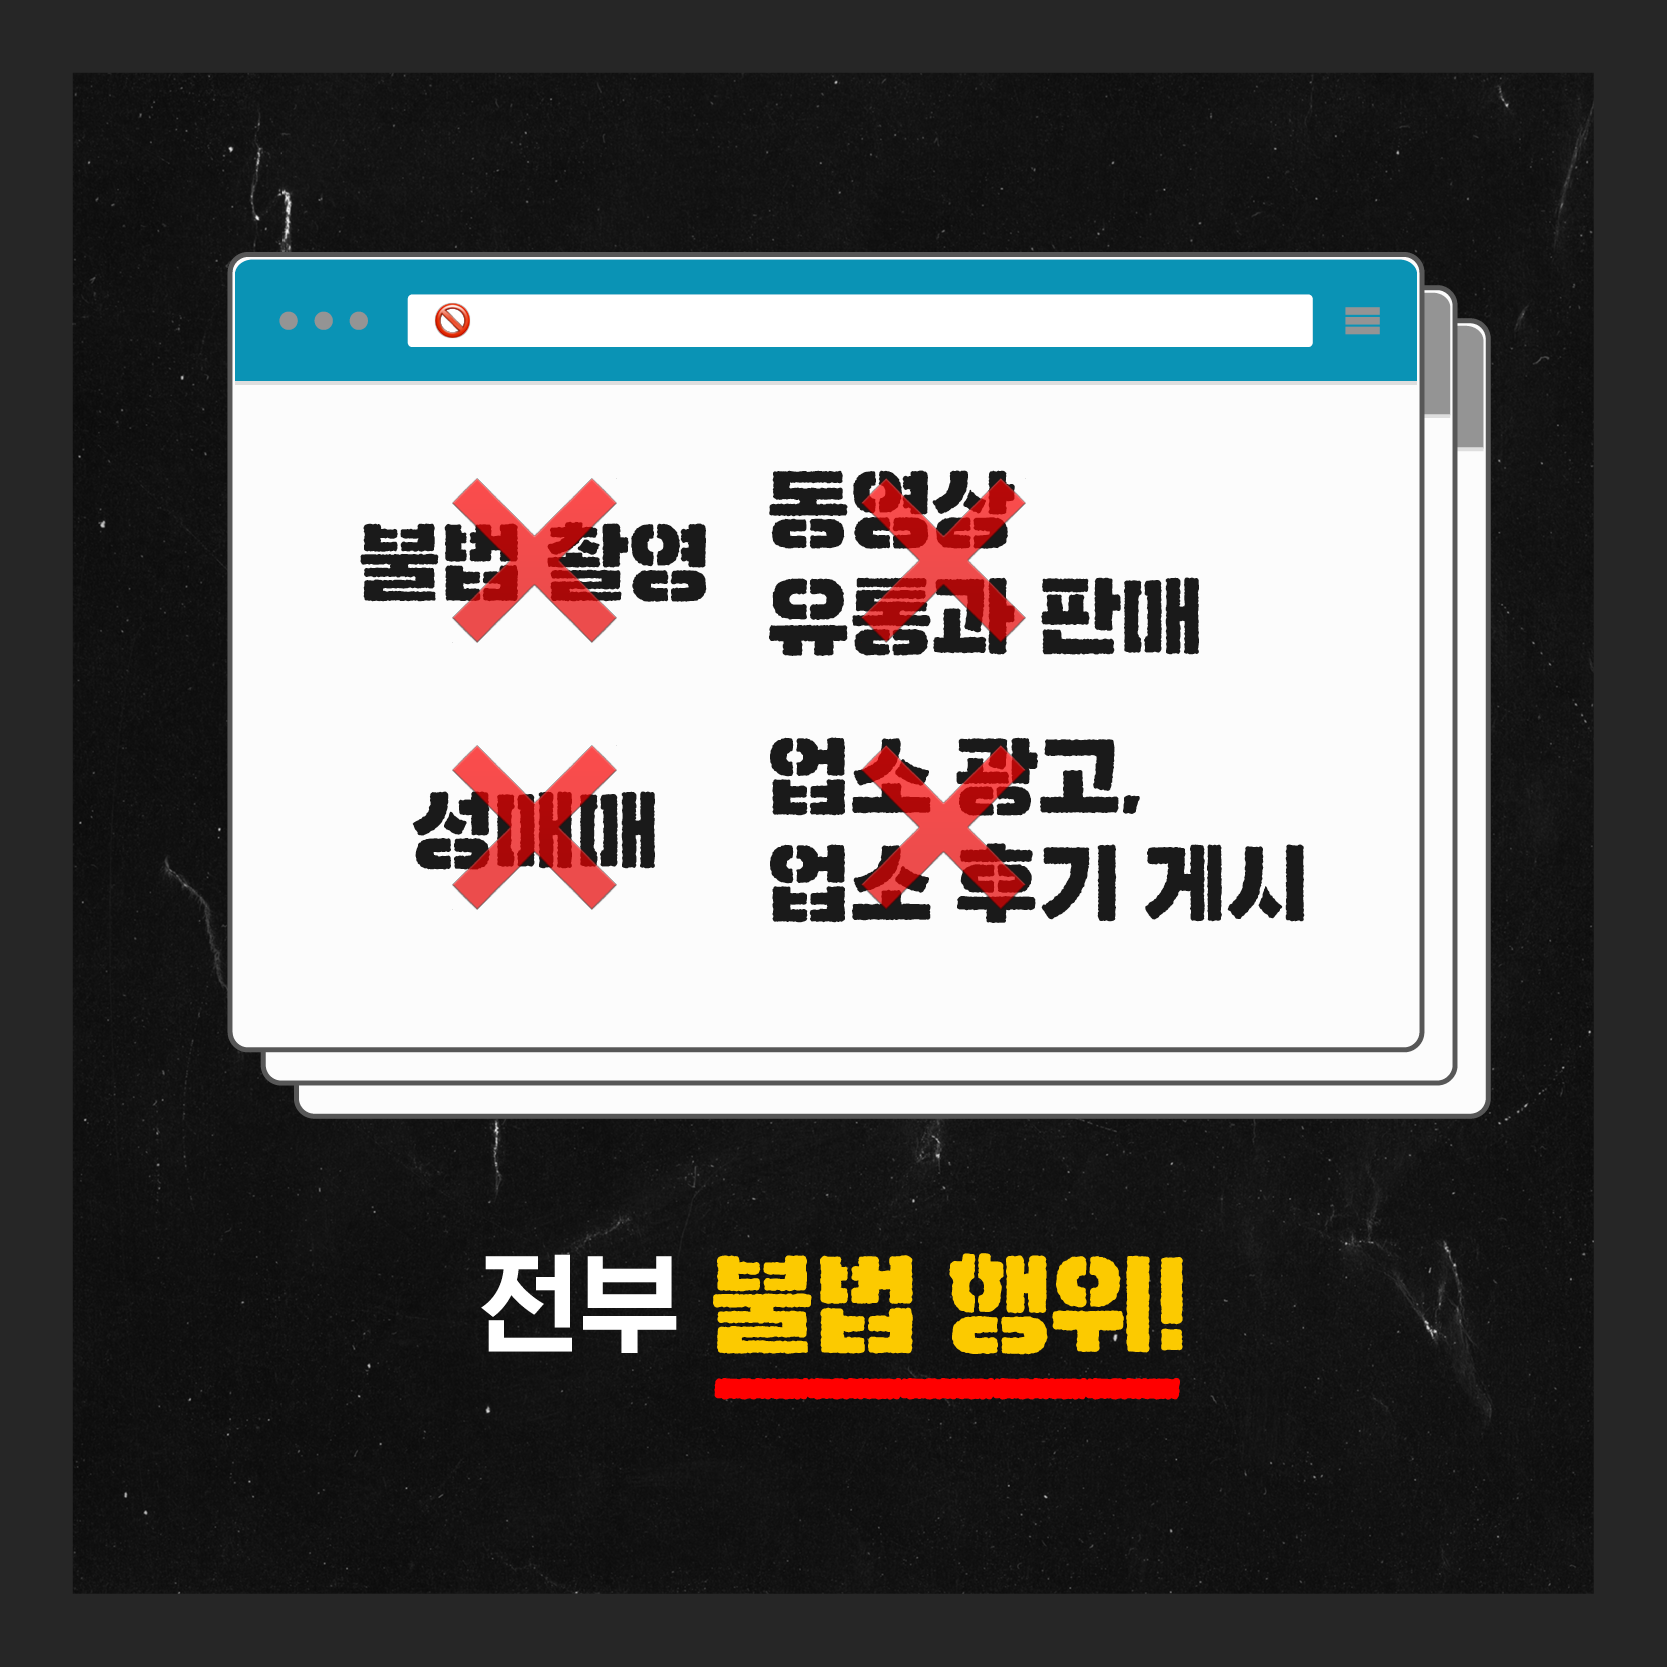 7장 불법 촬영X 동영상 유통과 판매X 성매매X 업소 광고, 업소 후기 게시X 전부 불법 행위!